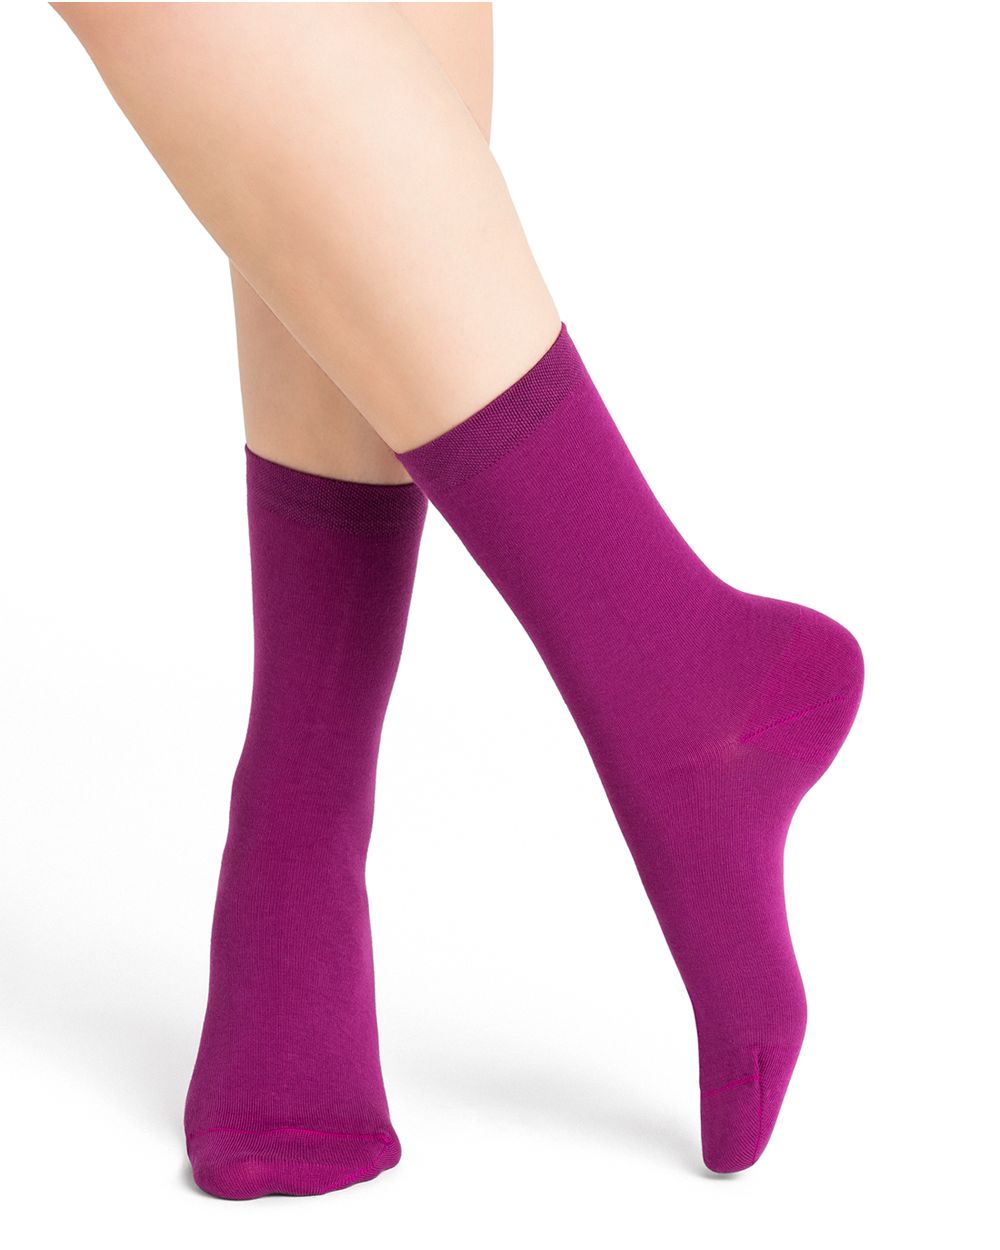 Socks - Plain (dahlia) 